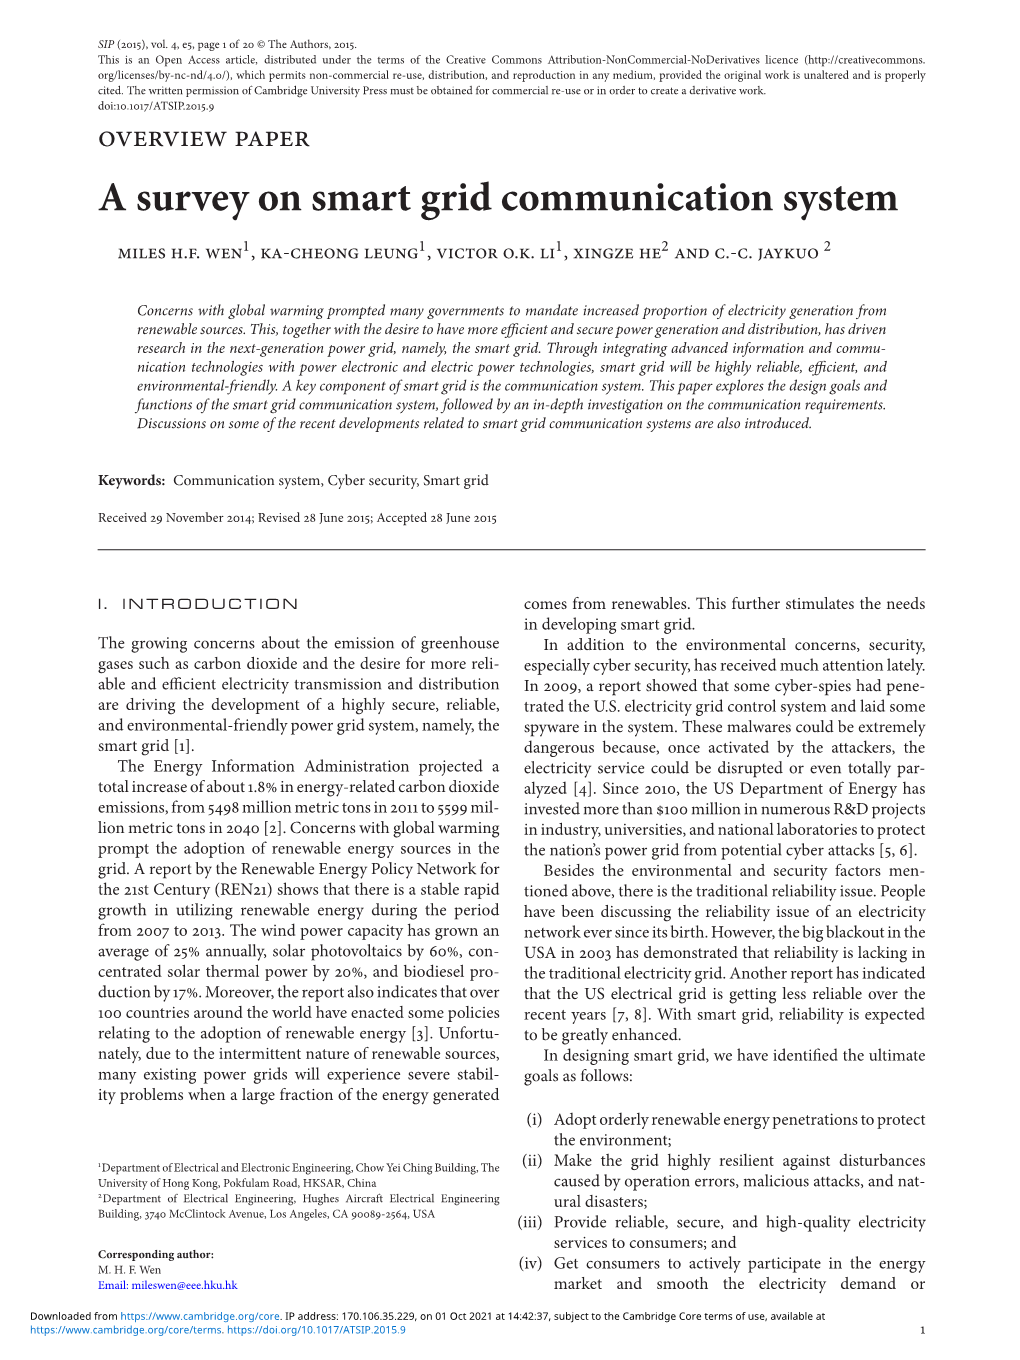 A Survey on Smart Grid Communication System